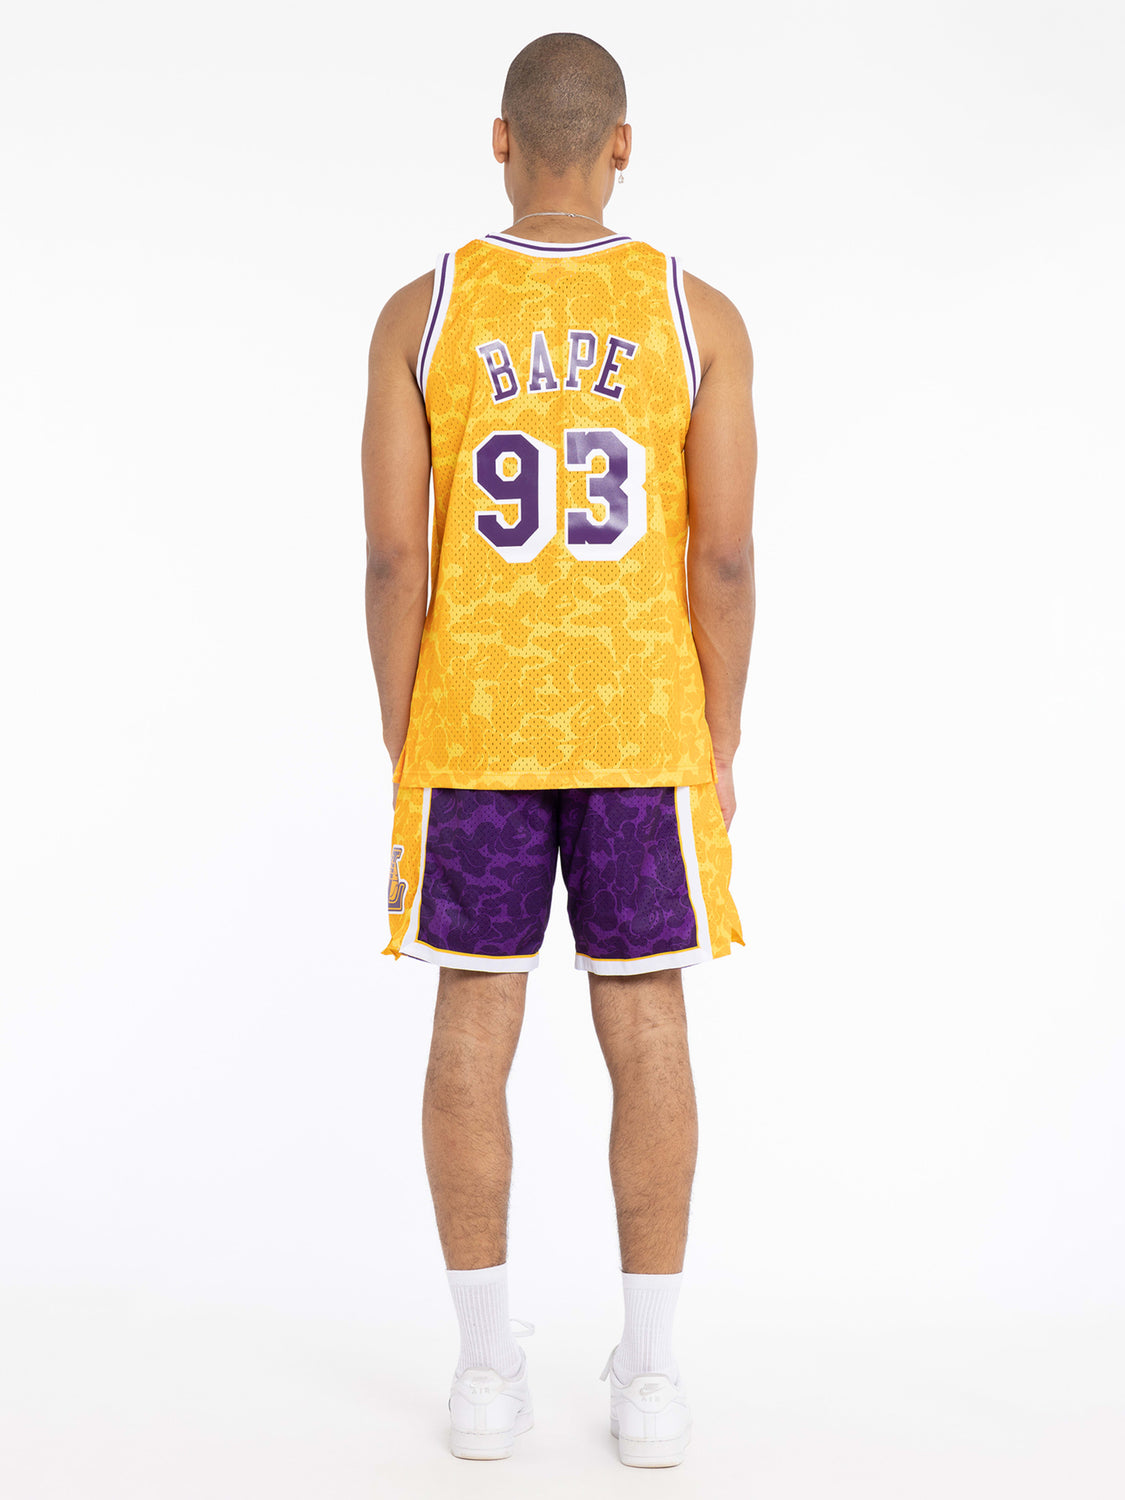 Bape x Mitchell & Ness L.A Lakers NBA Jersey | Mitchell & Ness